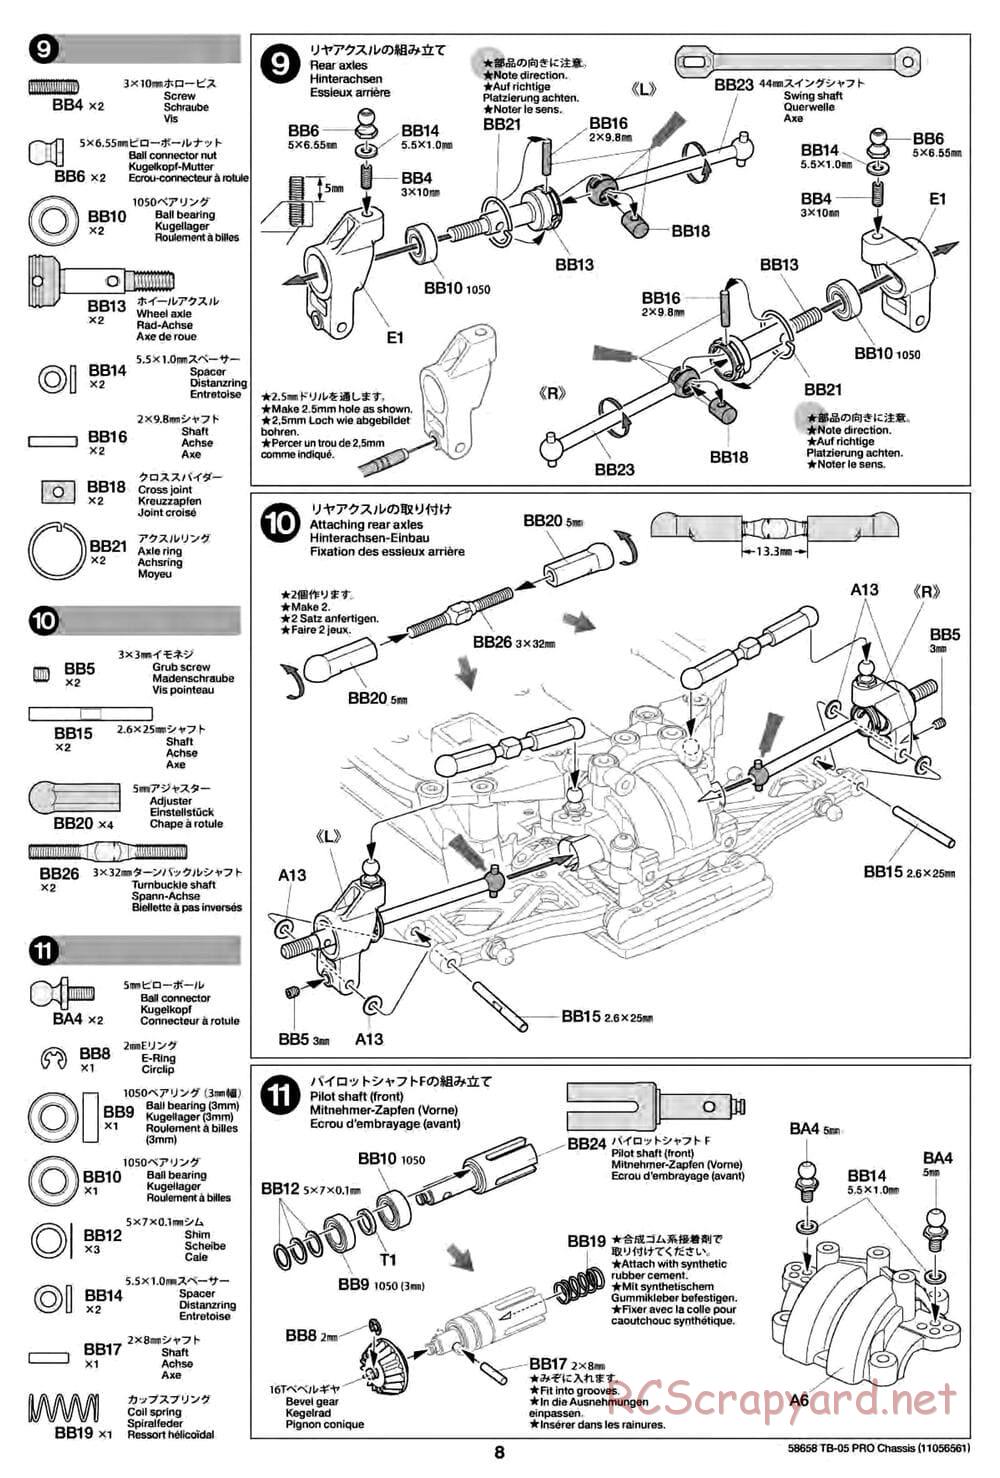 Tamiya - TB-05 Pro Chassis - Manual - Page 8